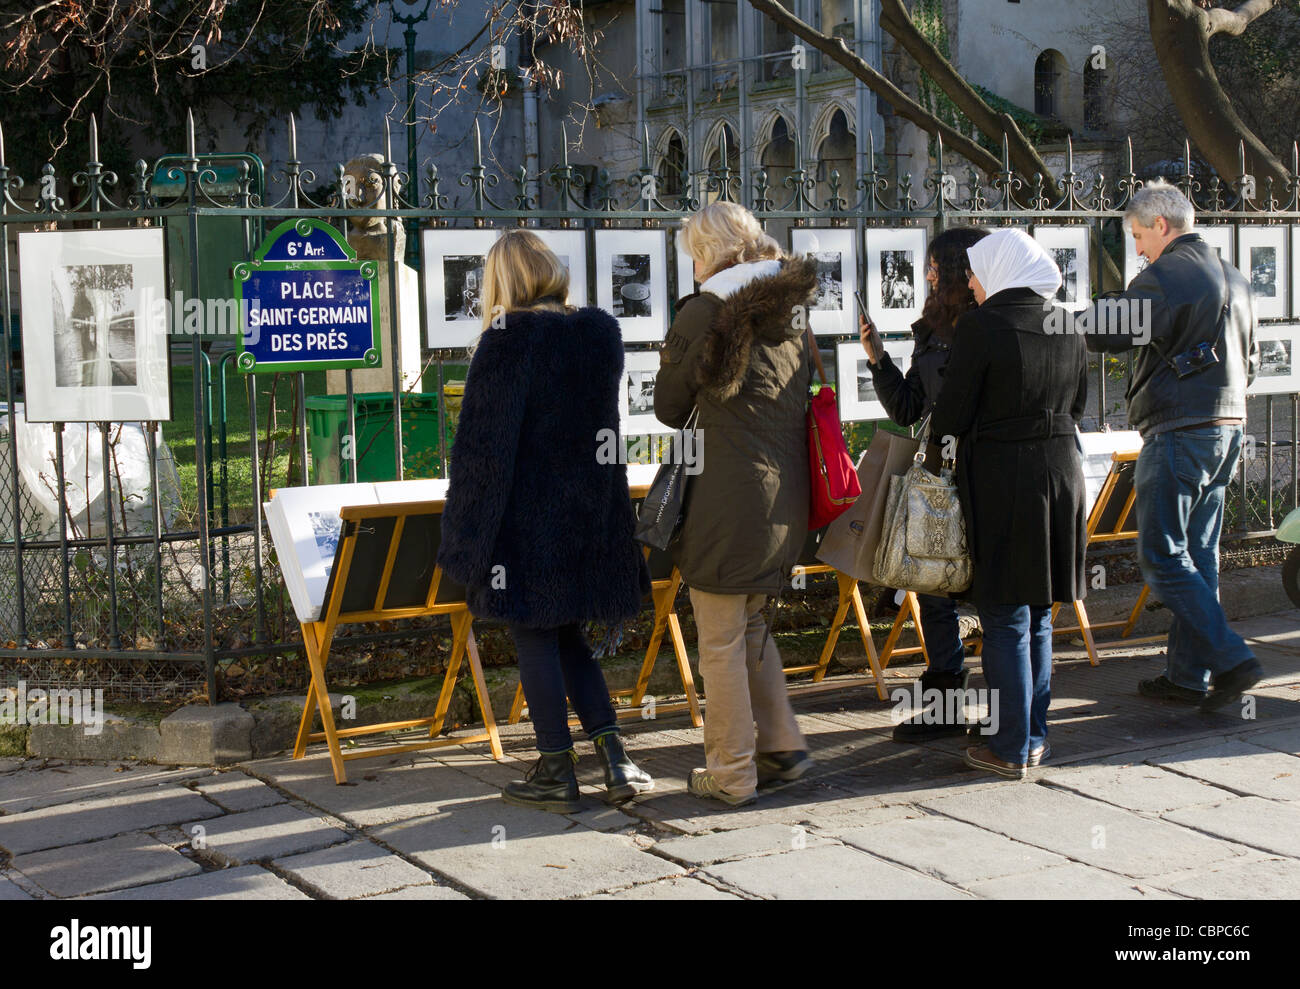 La gente en la fotografía de la calle cala, lugar de Saint-Germain des Prés, en París, Francia Foto de stock